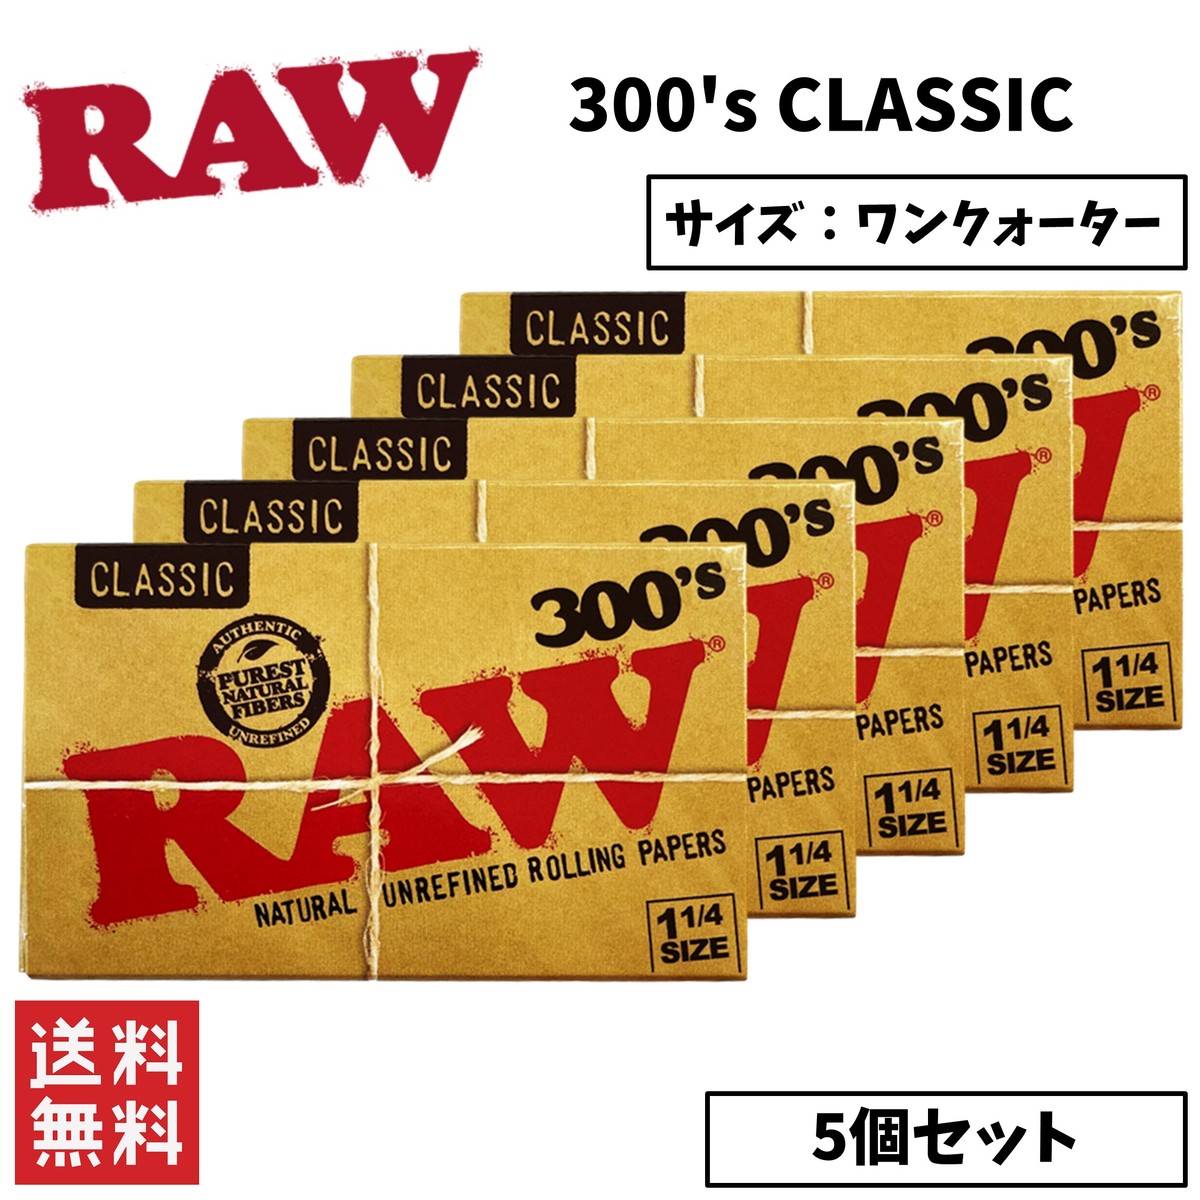 RAW CLASSIC 300's ロウ クラシック 1 1/4 ワンクオーター ペーパー 5個セット 喫煙具 手巻きたばこ ペーパー